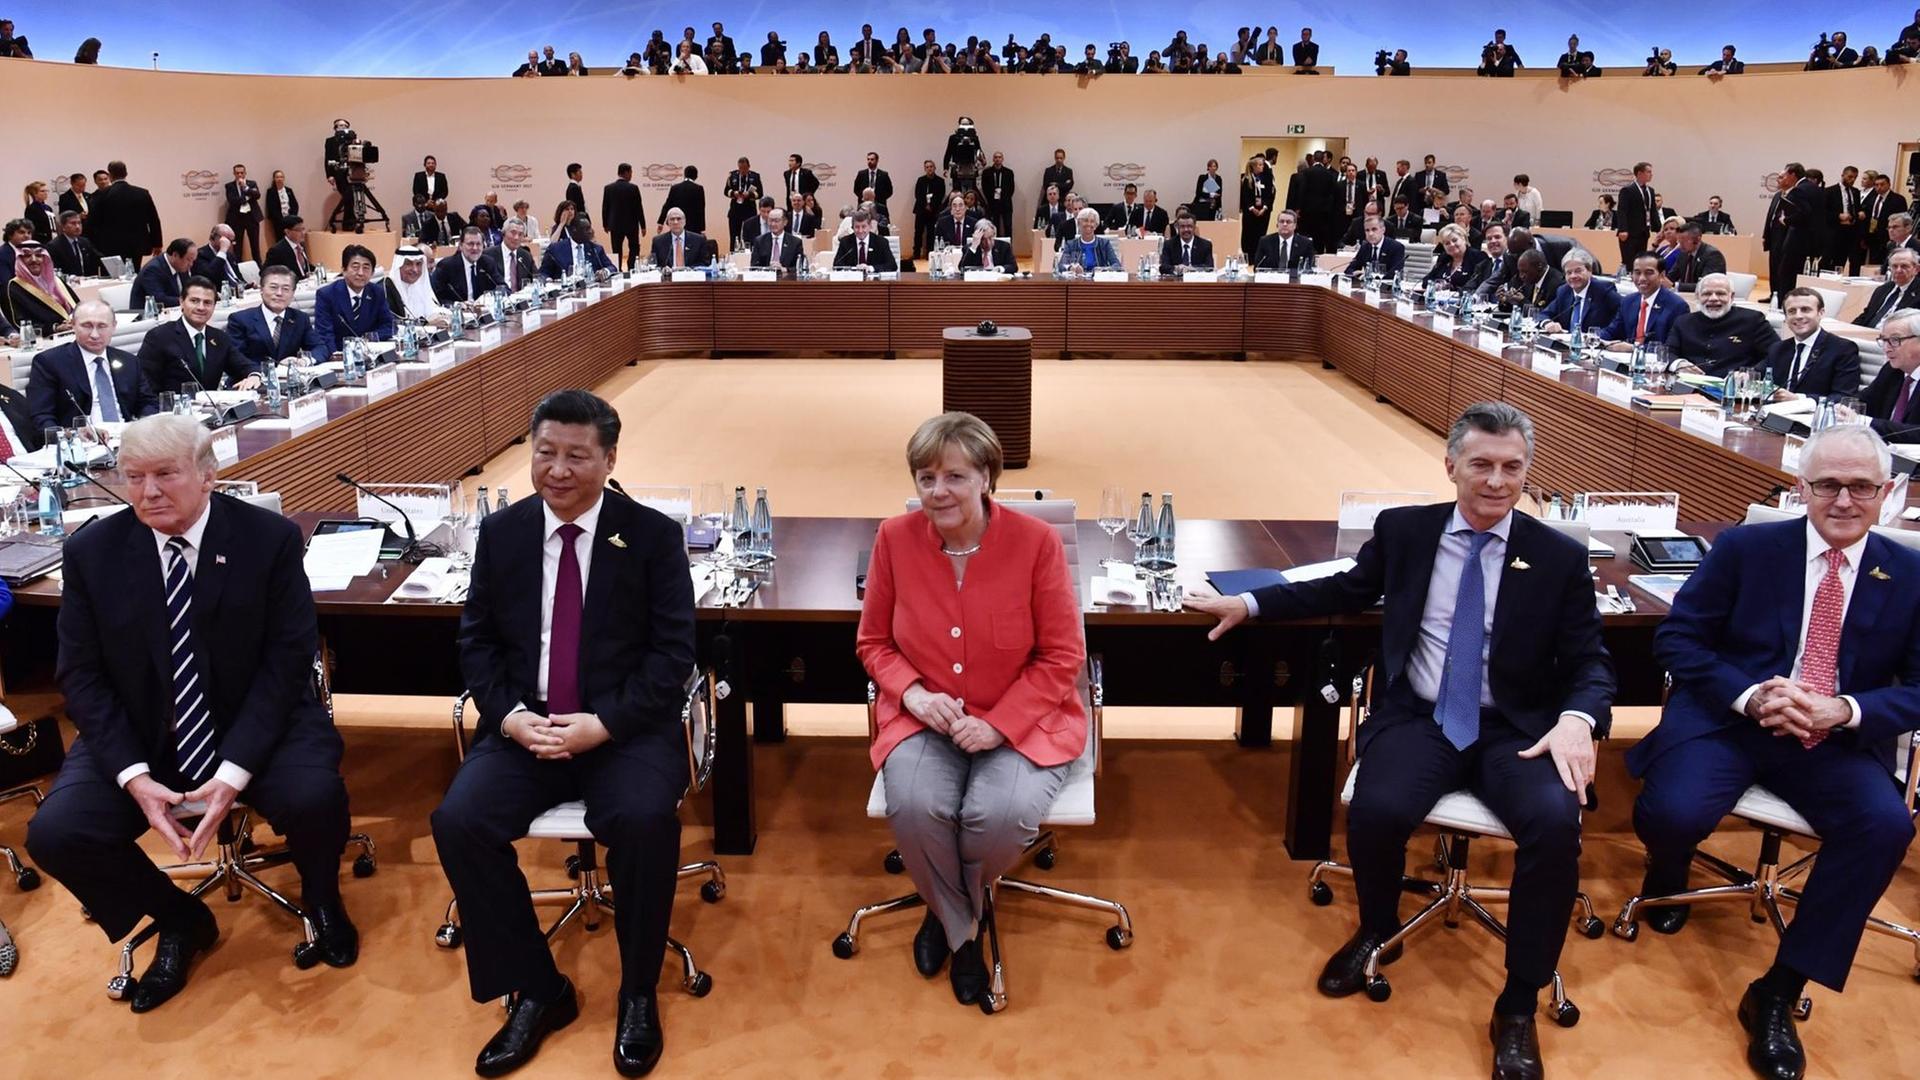 US-Präsident Donald Trump, Chinas Präsident Xi Jinping, Bundeskanzlerin Angela Merkel, Argentiniens Präsident Mauricio Macri und Australiens Premierminister Malcolm Turnbull beim G20-Gipfel in Hamburg.